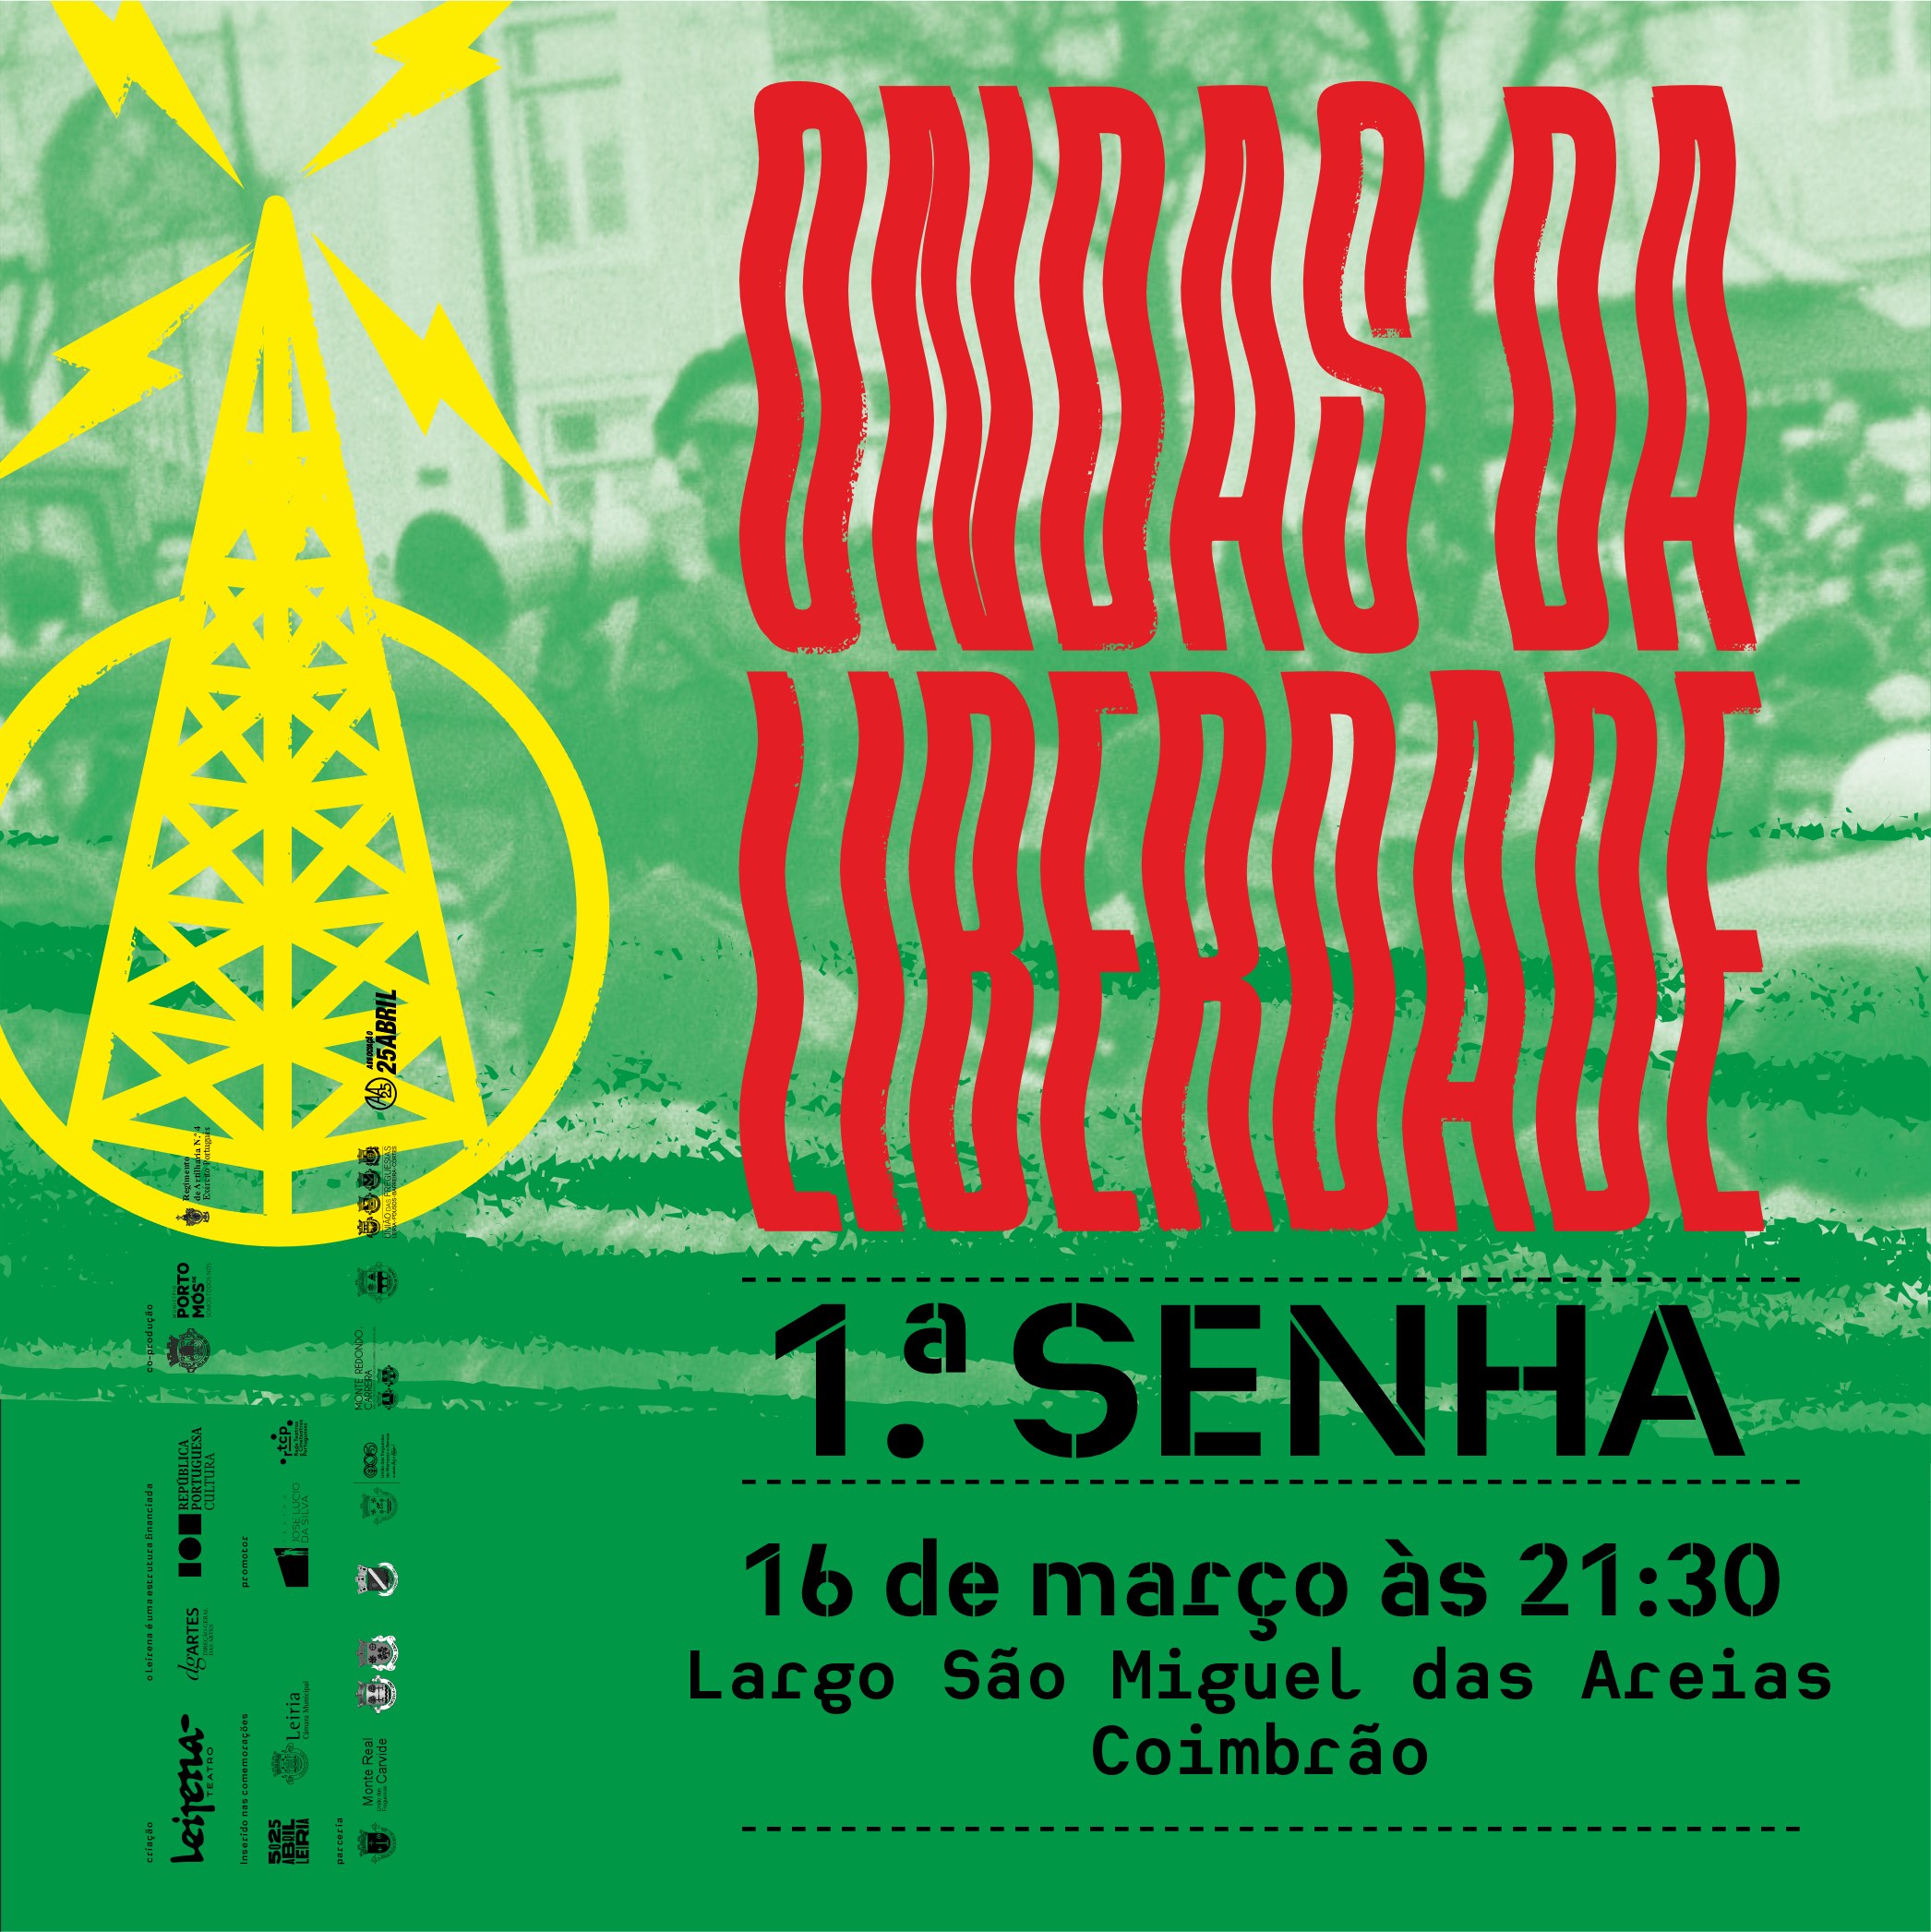 Notícia "Ondas da Liberdade-1.ª Senha" : Coimbrão, 16 de março, às 21h30, no Largo S. Miguel das Areias